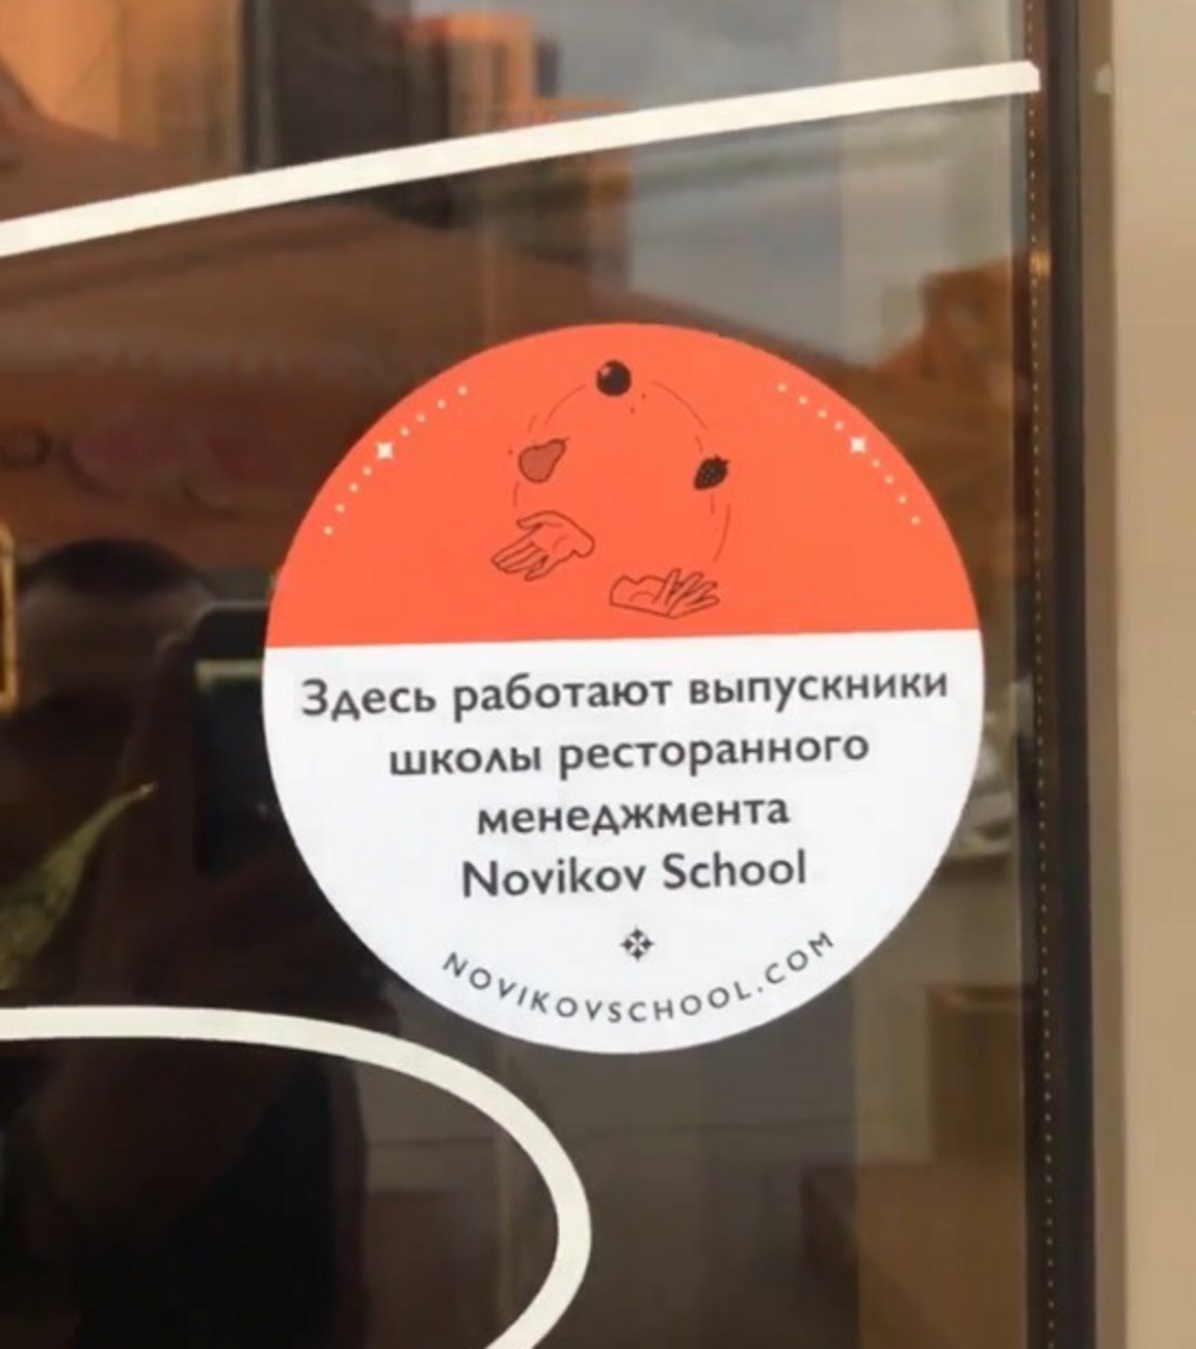 Теперь такие наклейки красуются на&nbsp;заведениях Екатеринбурга.